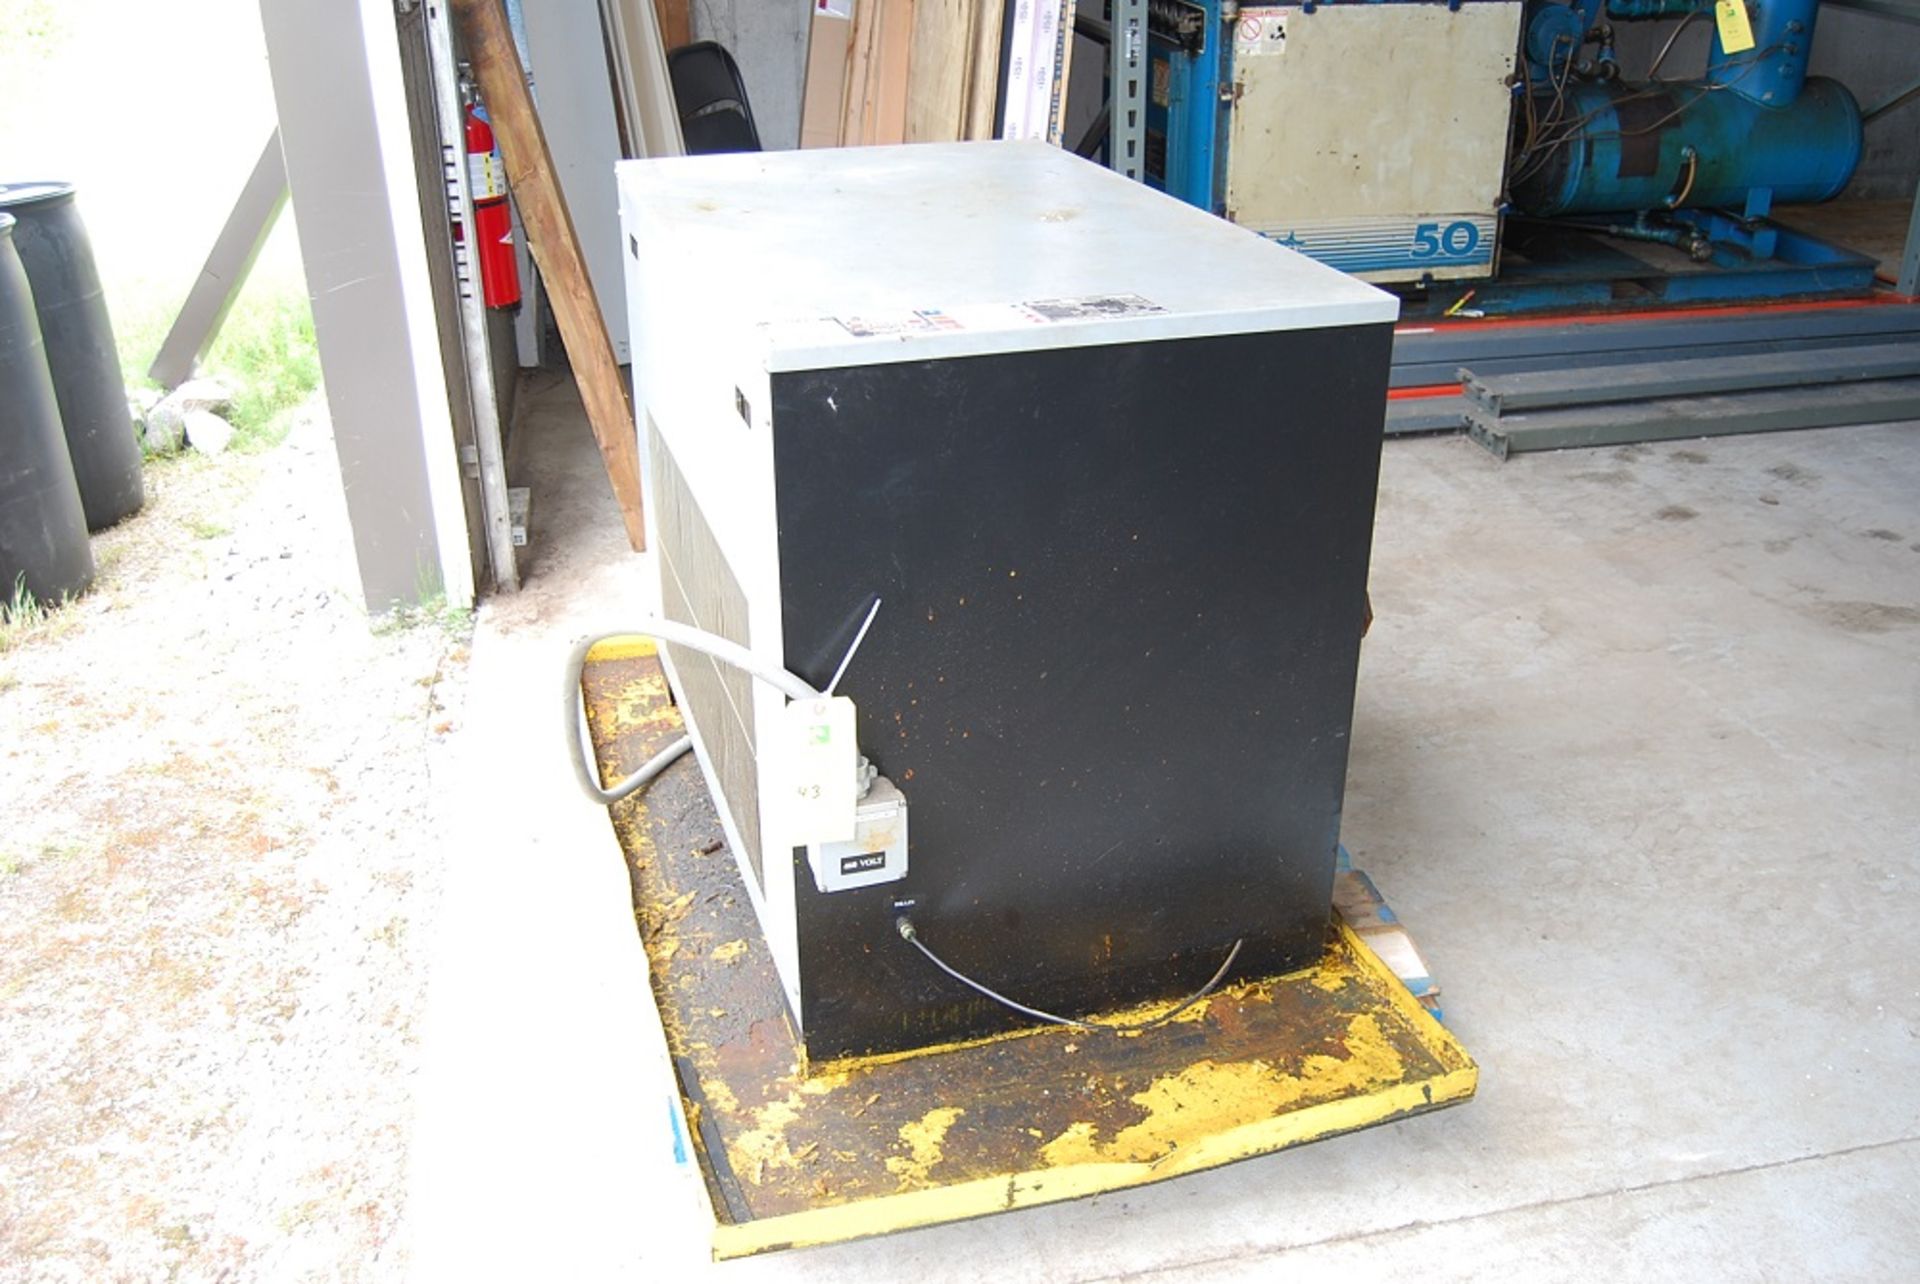 Airtek Air Dryer, Model: DA500-A4, SN: 080300118 460 volts 3 phase, Foot print: 46" x 28" x 36"